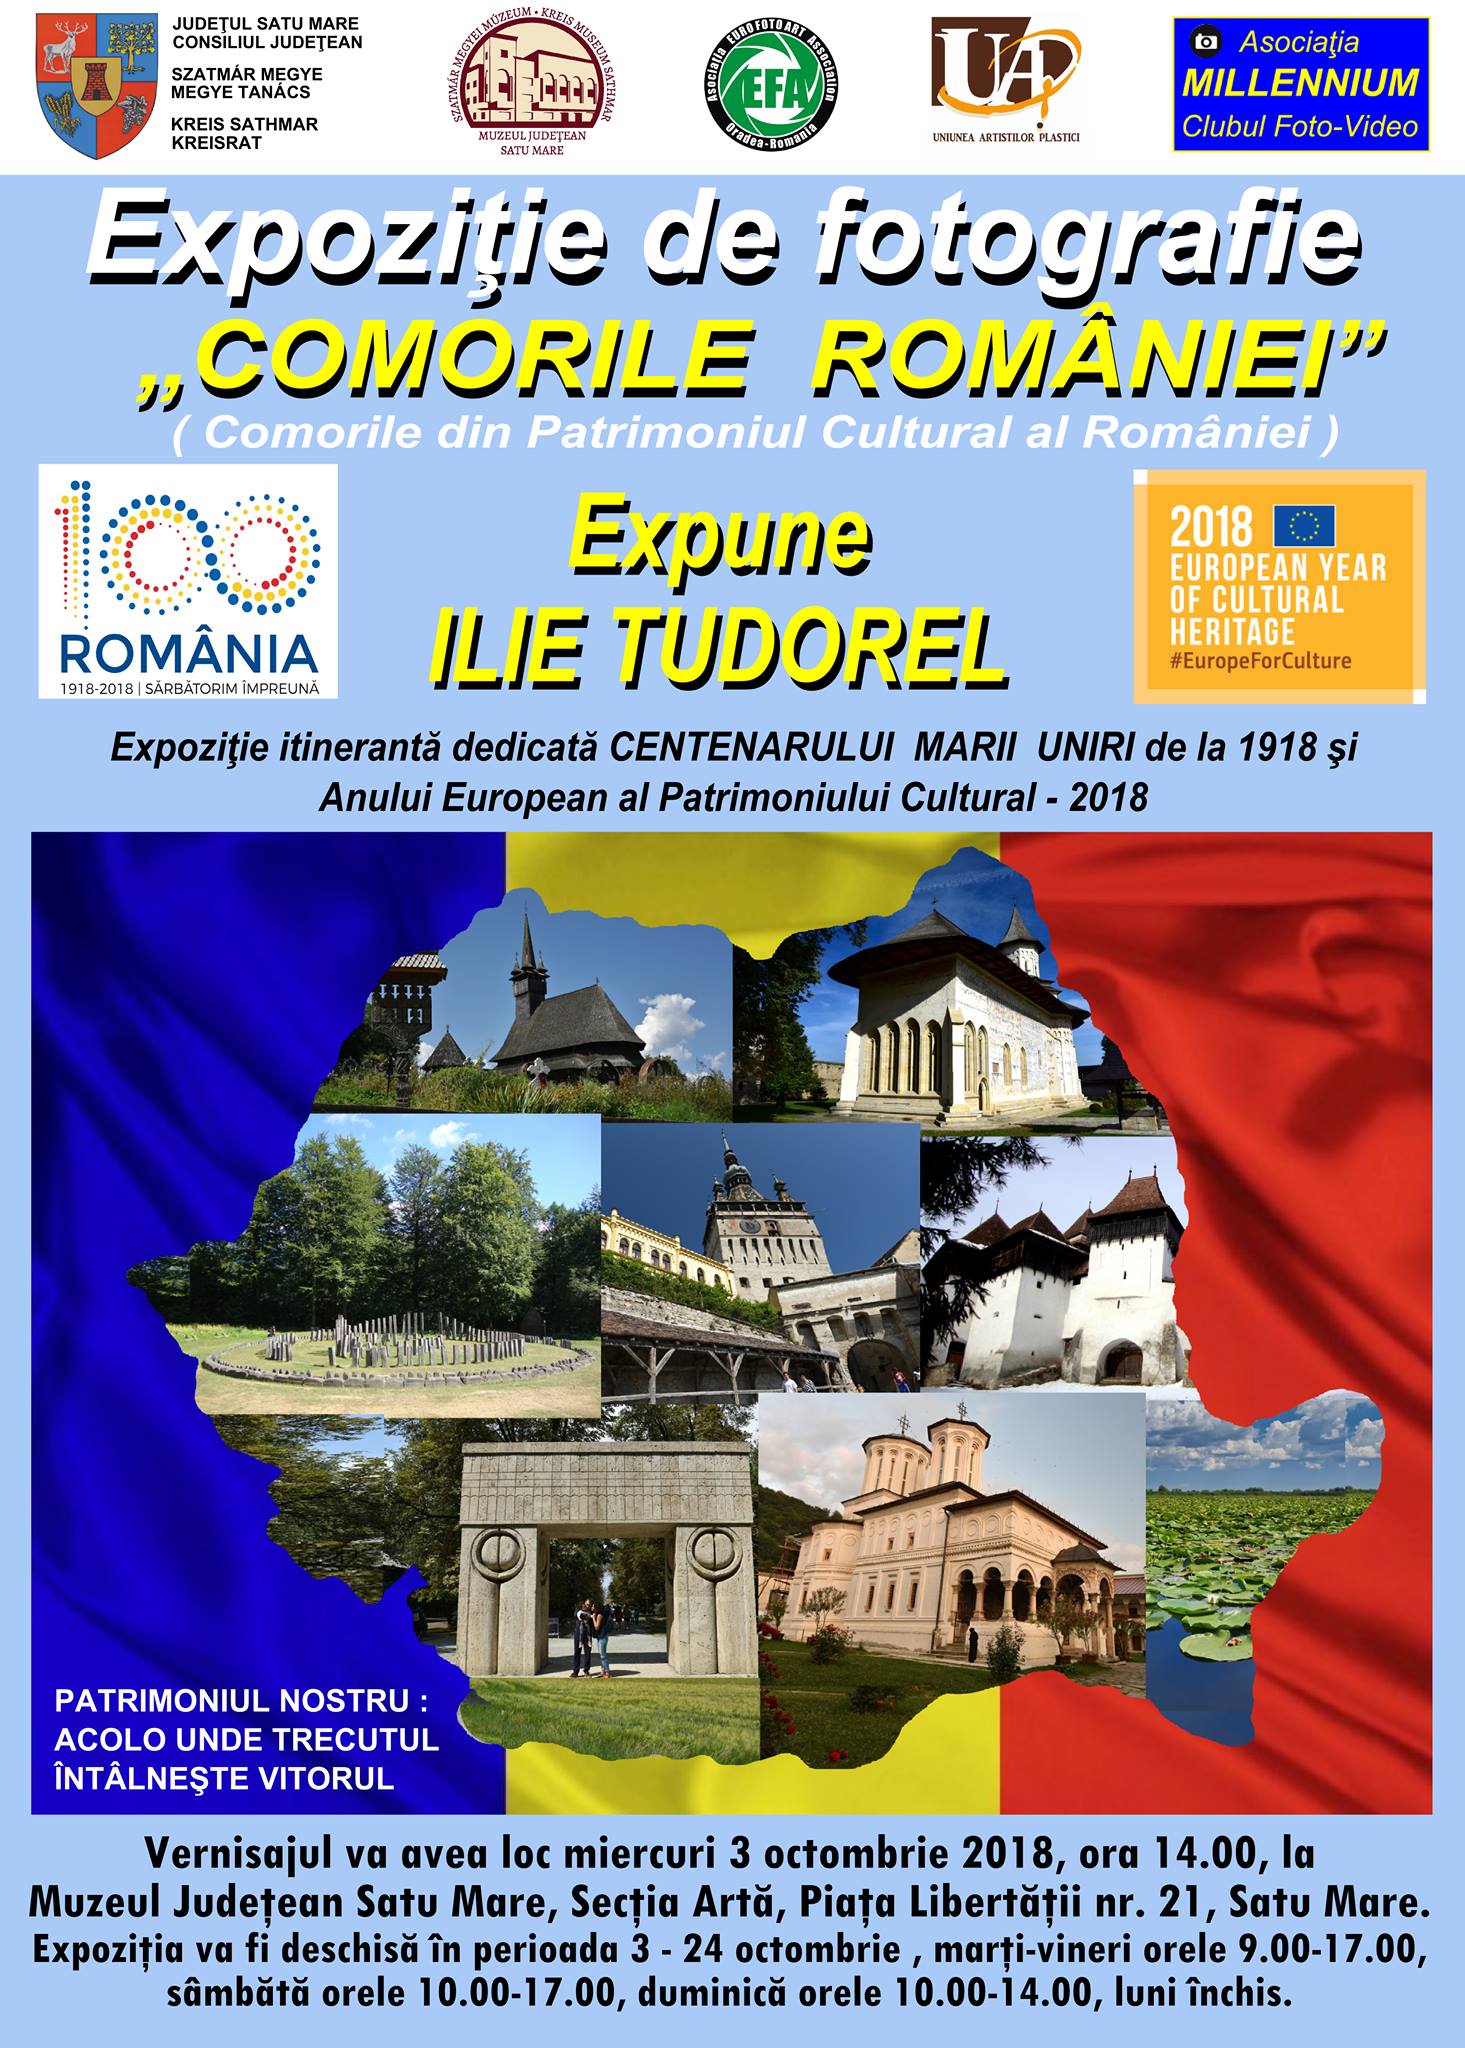 ”Comorile României”